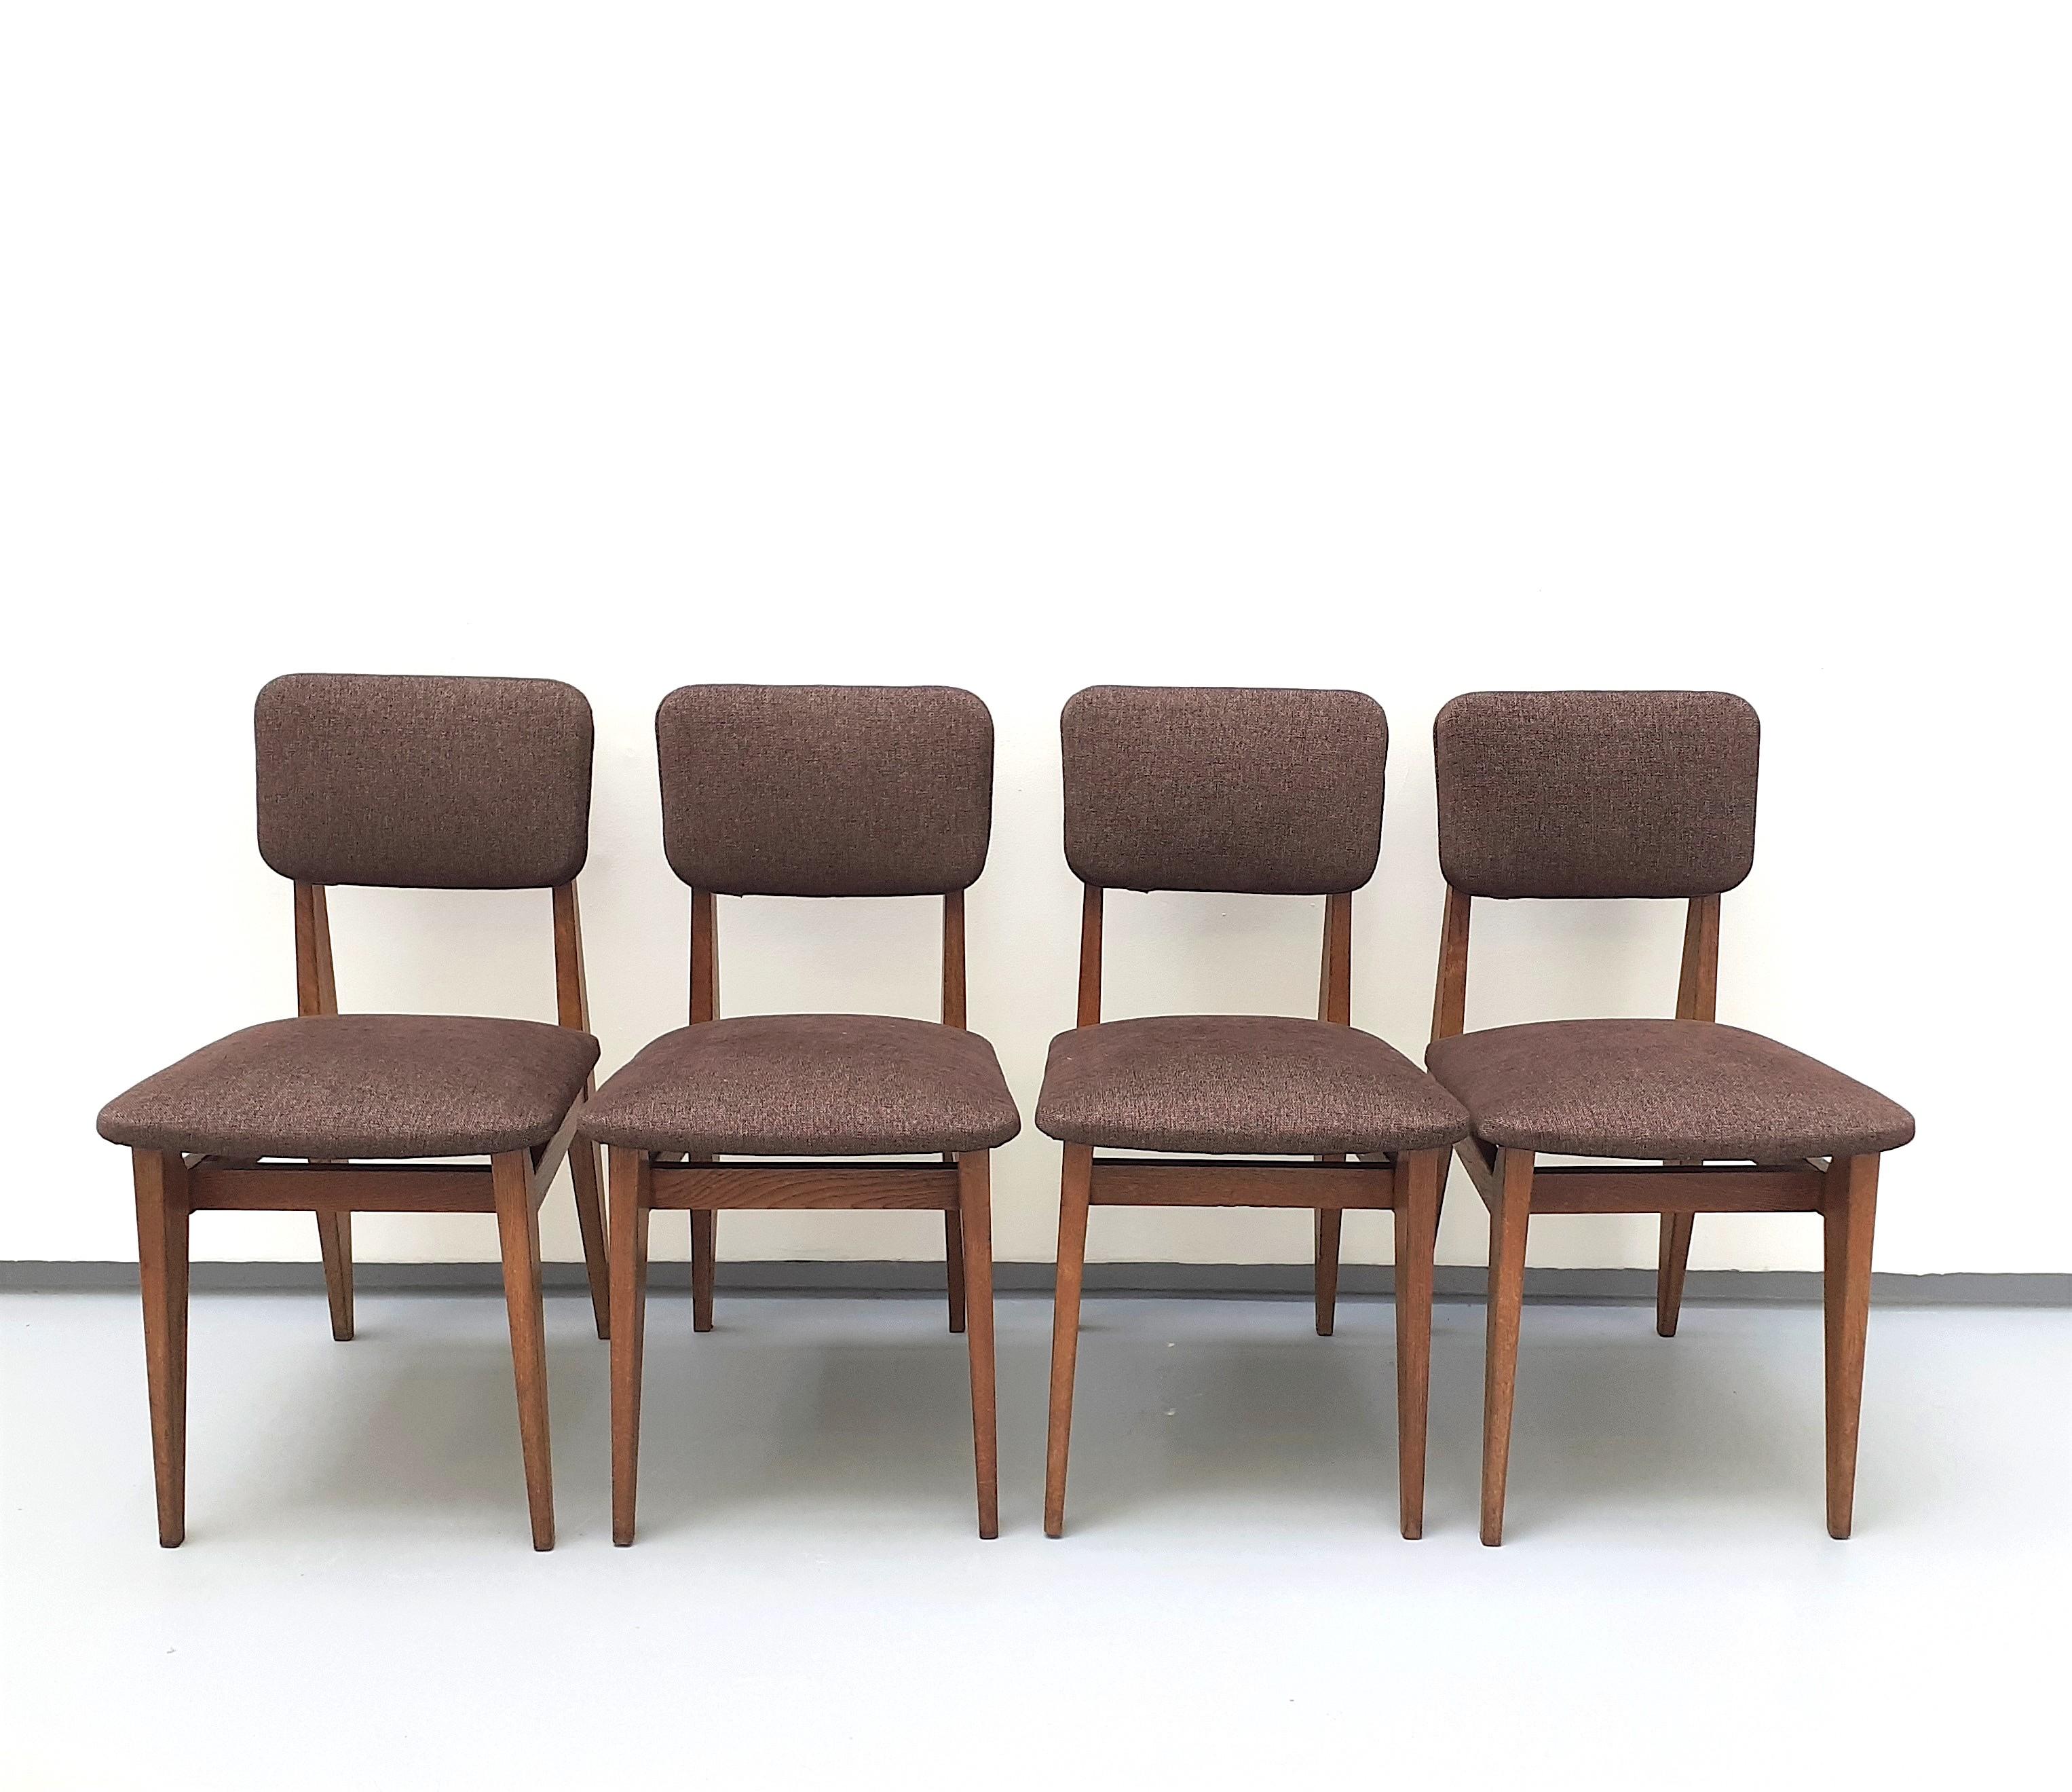 Ensemble de 4 chaises en bois et tissu de Marcel Gascoin

Cet ensemble de chaises ne présente aucun défaut, mais il peut présenter de légères traces d'utilisation. 

Marcel Gascoin est le principal représentant d'un design français né après la